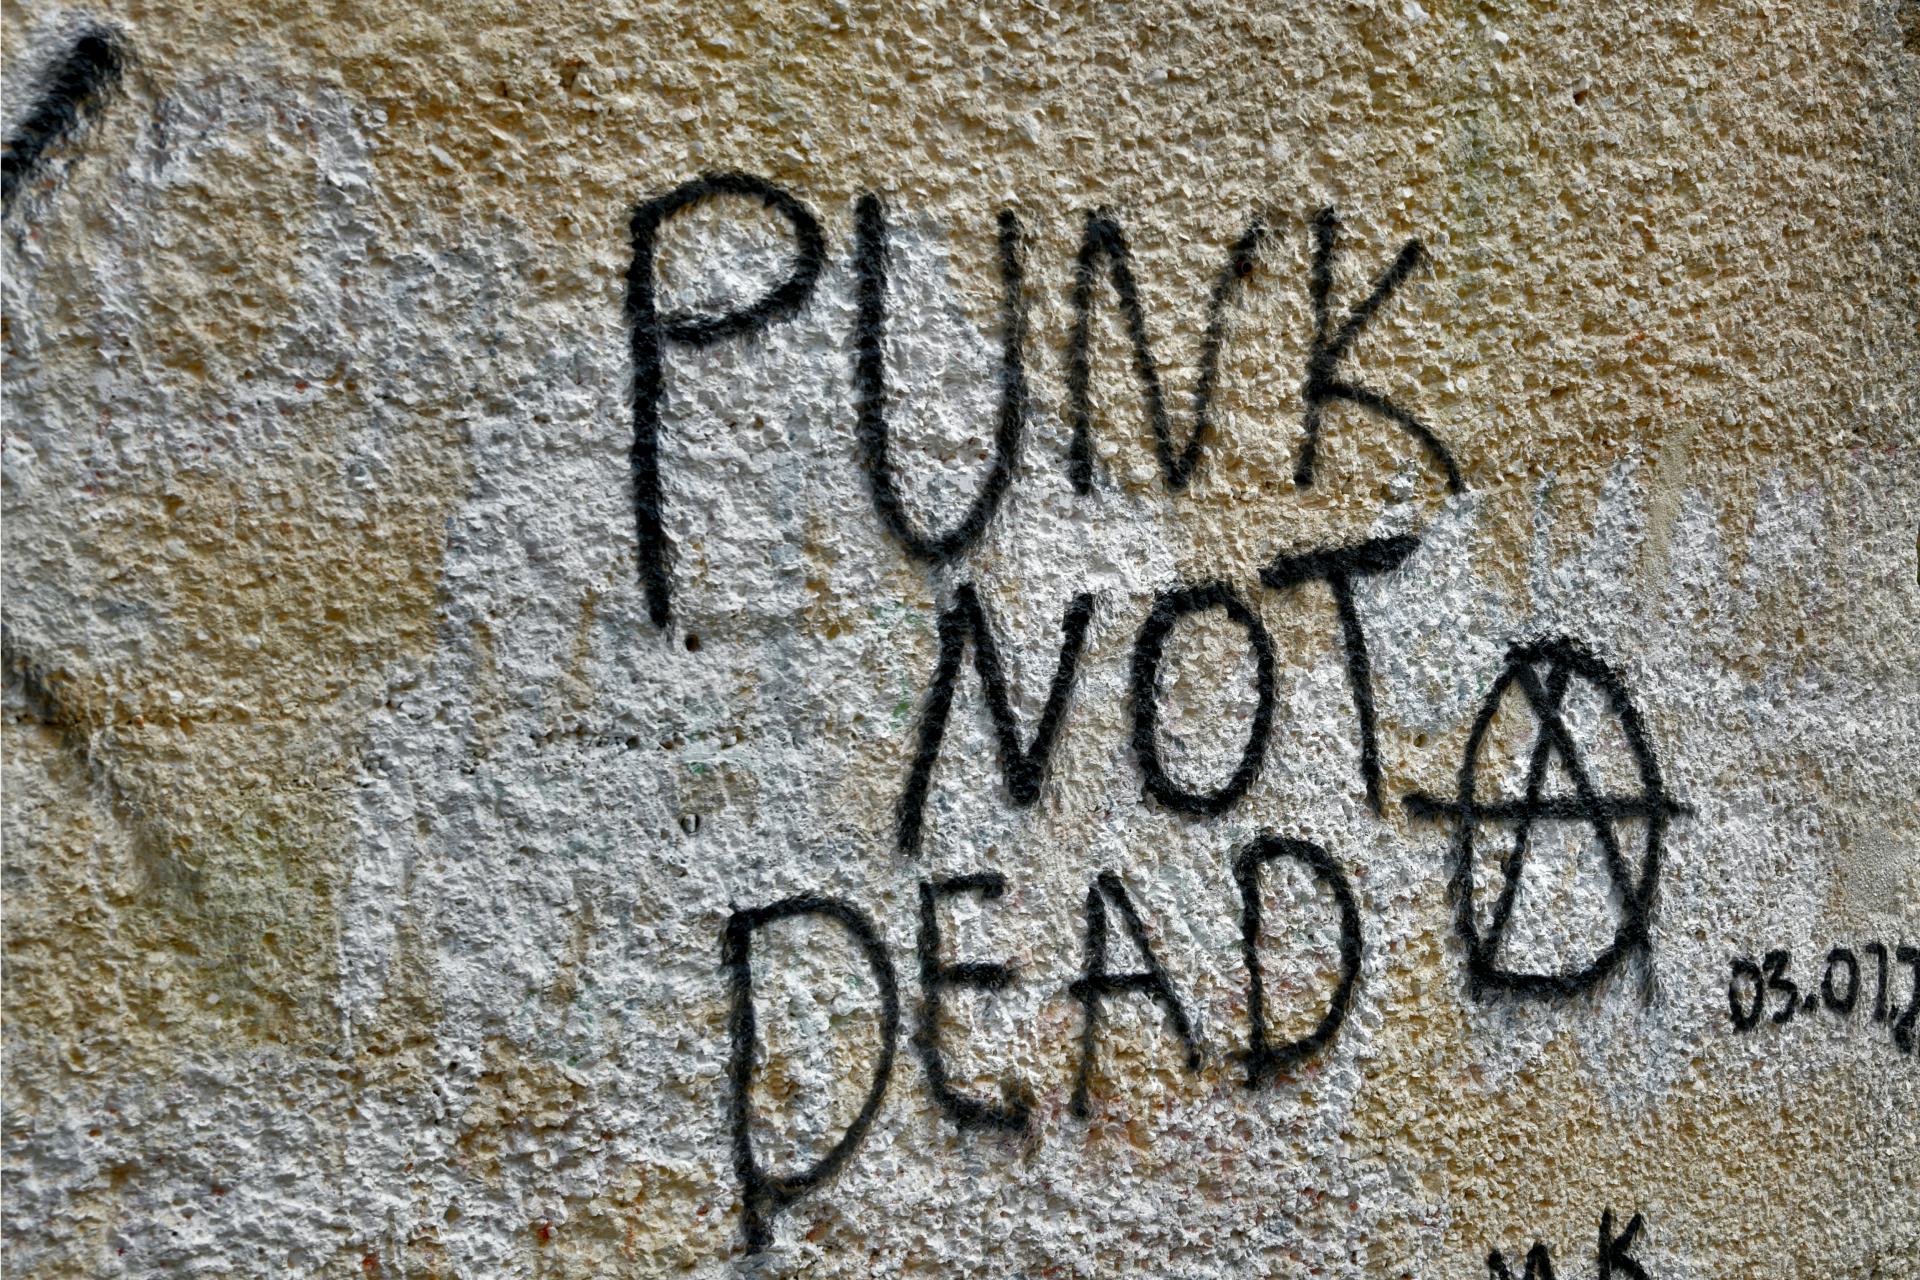 Frki je na zidu HNK napisao 'Punk is not dead'